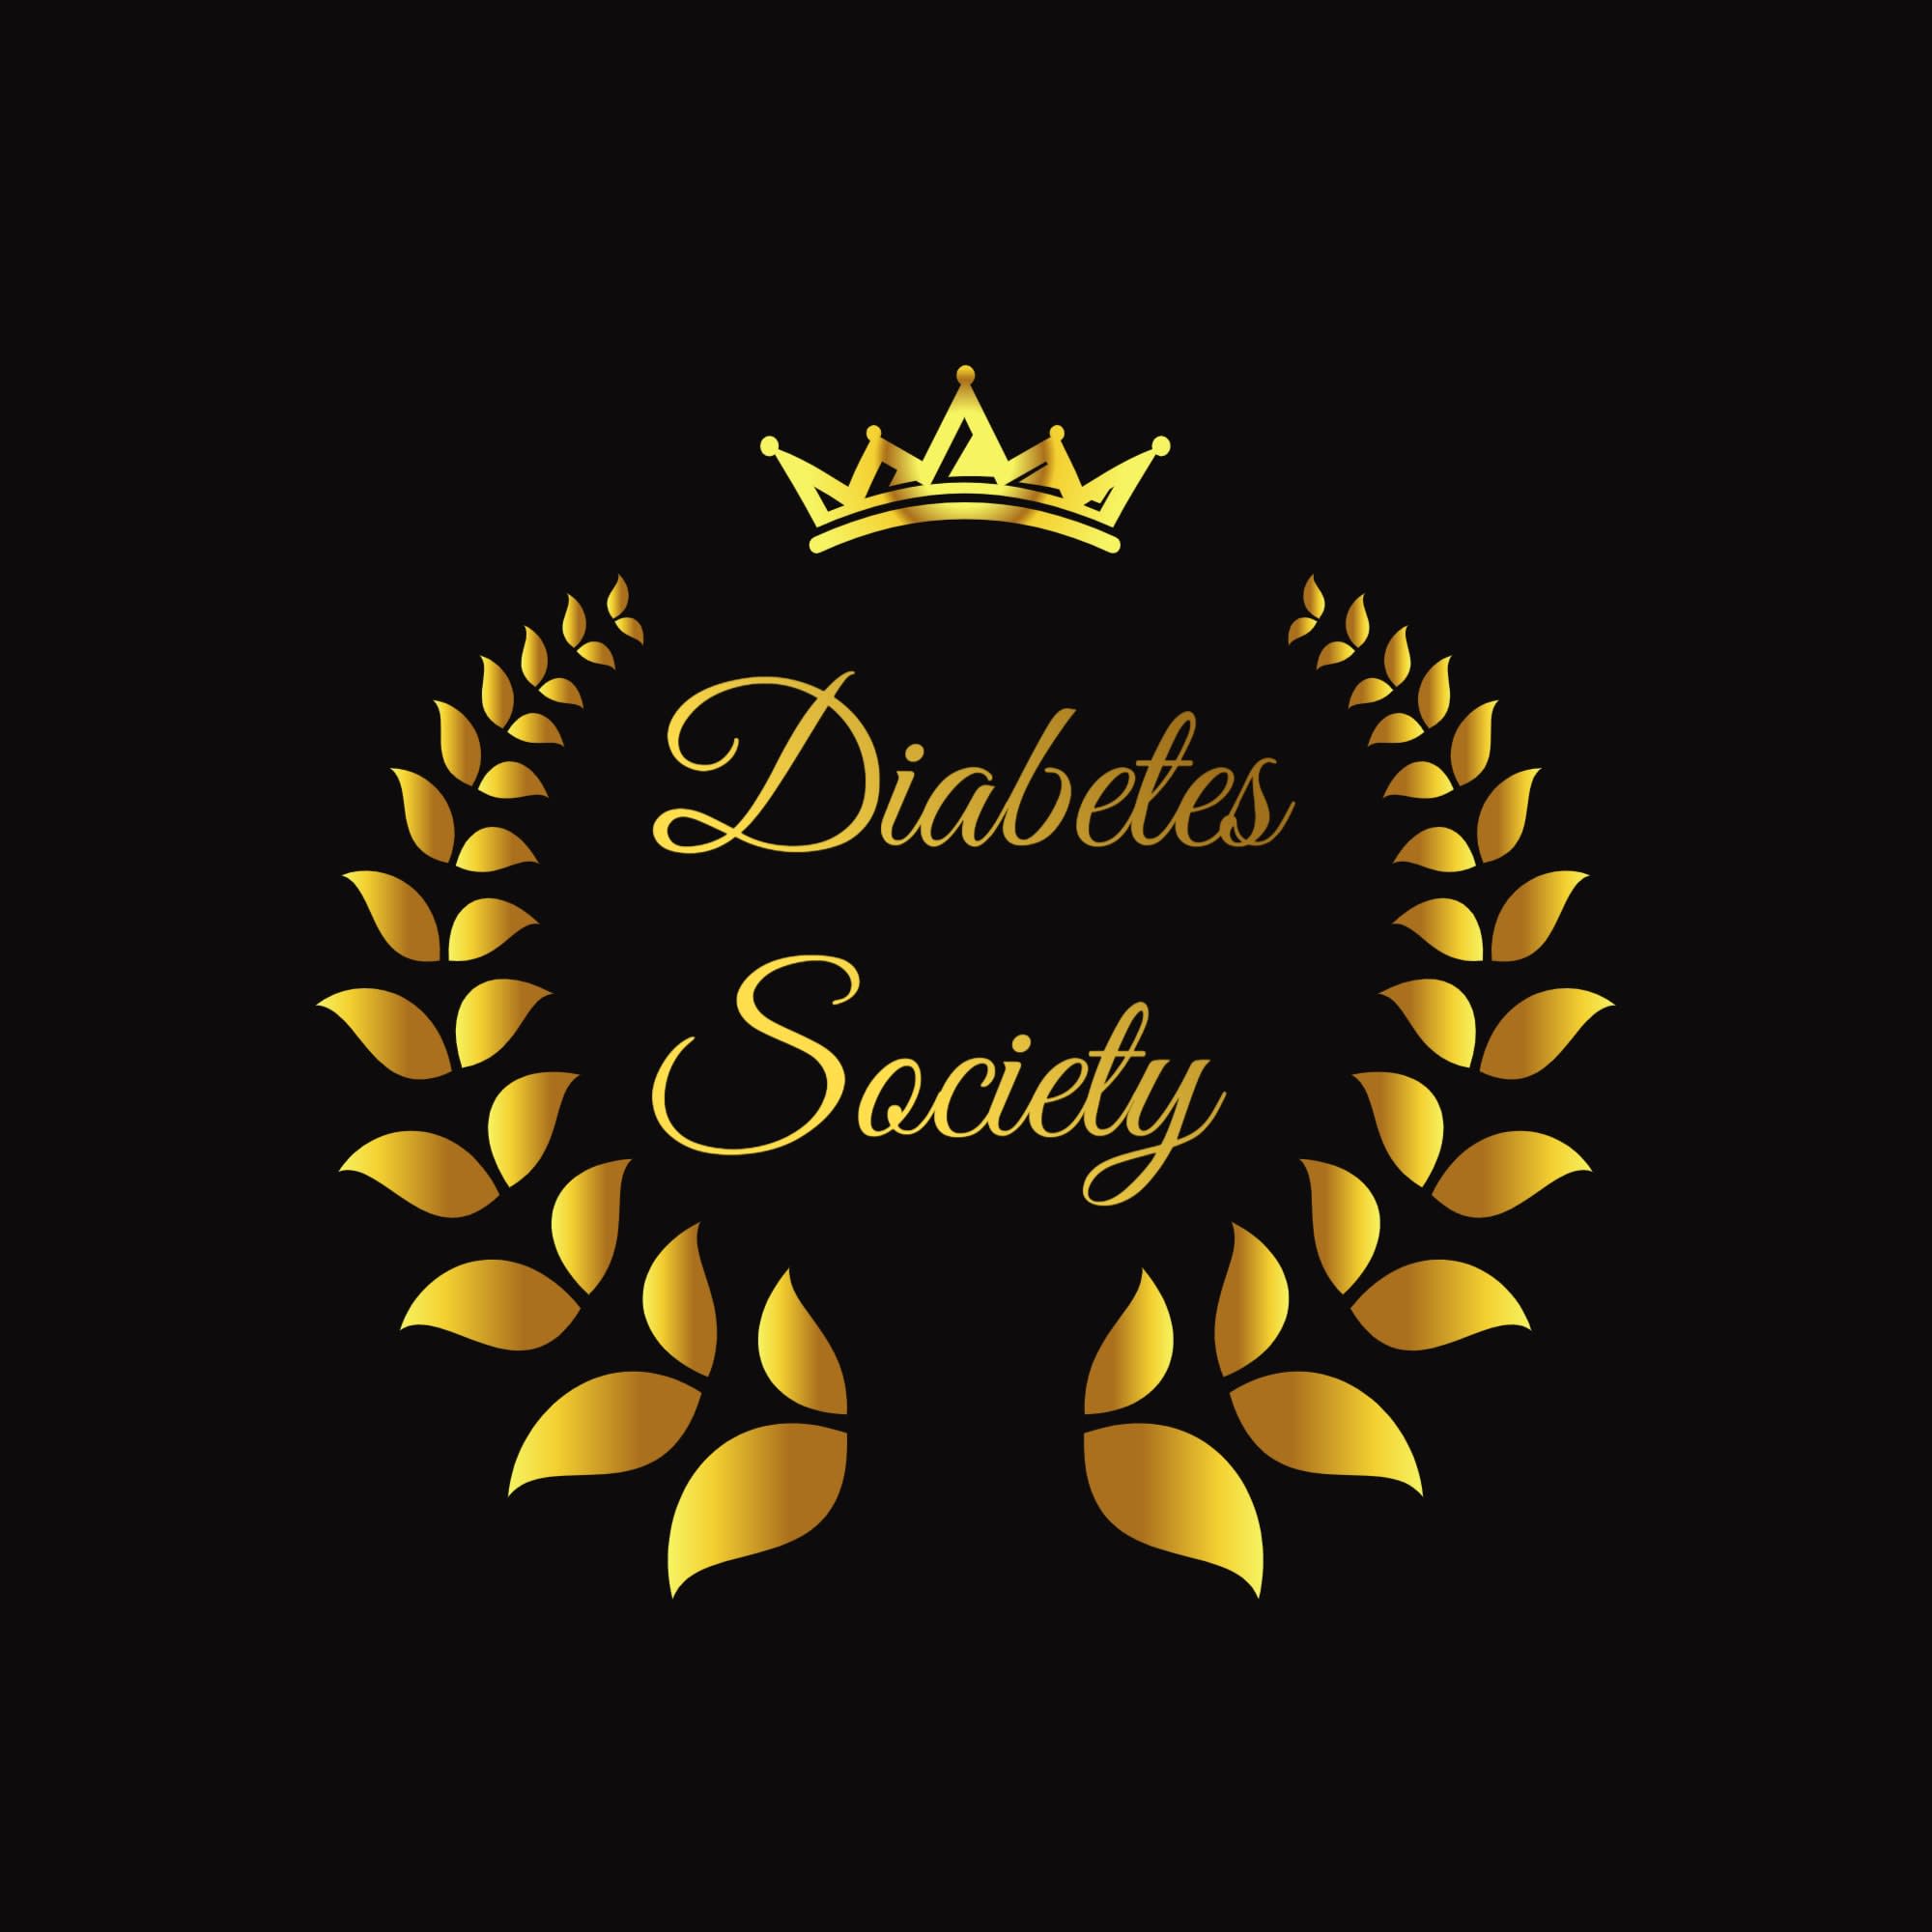 Diabetes Society